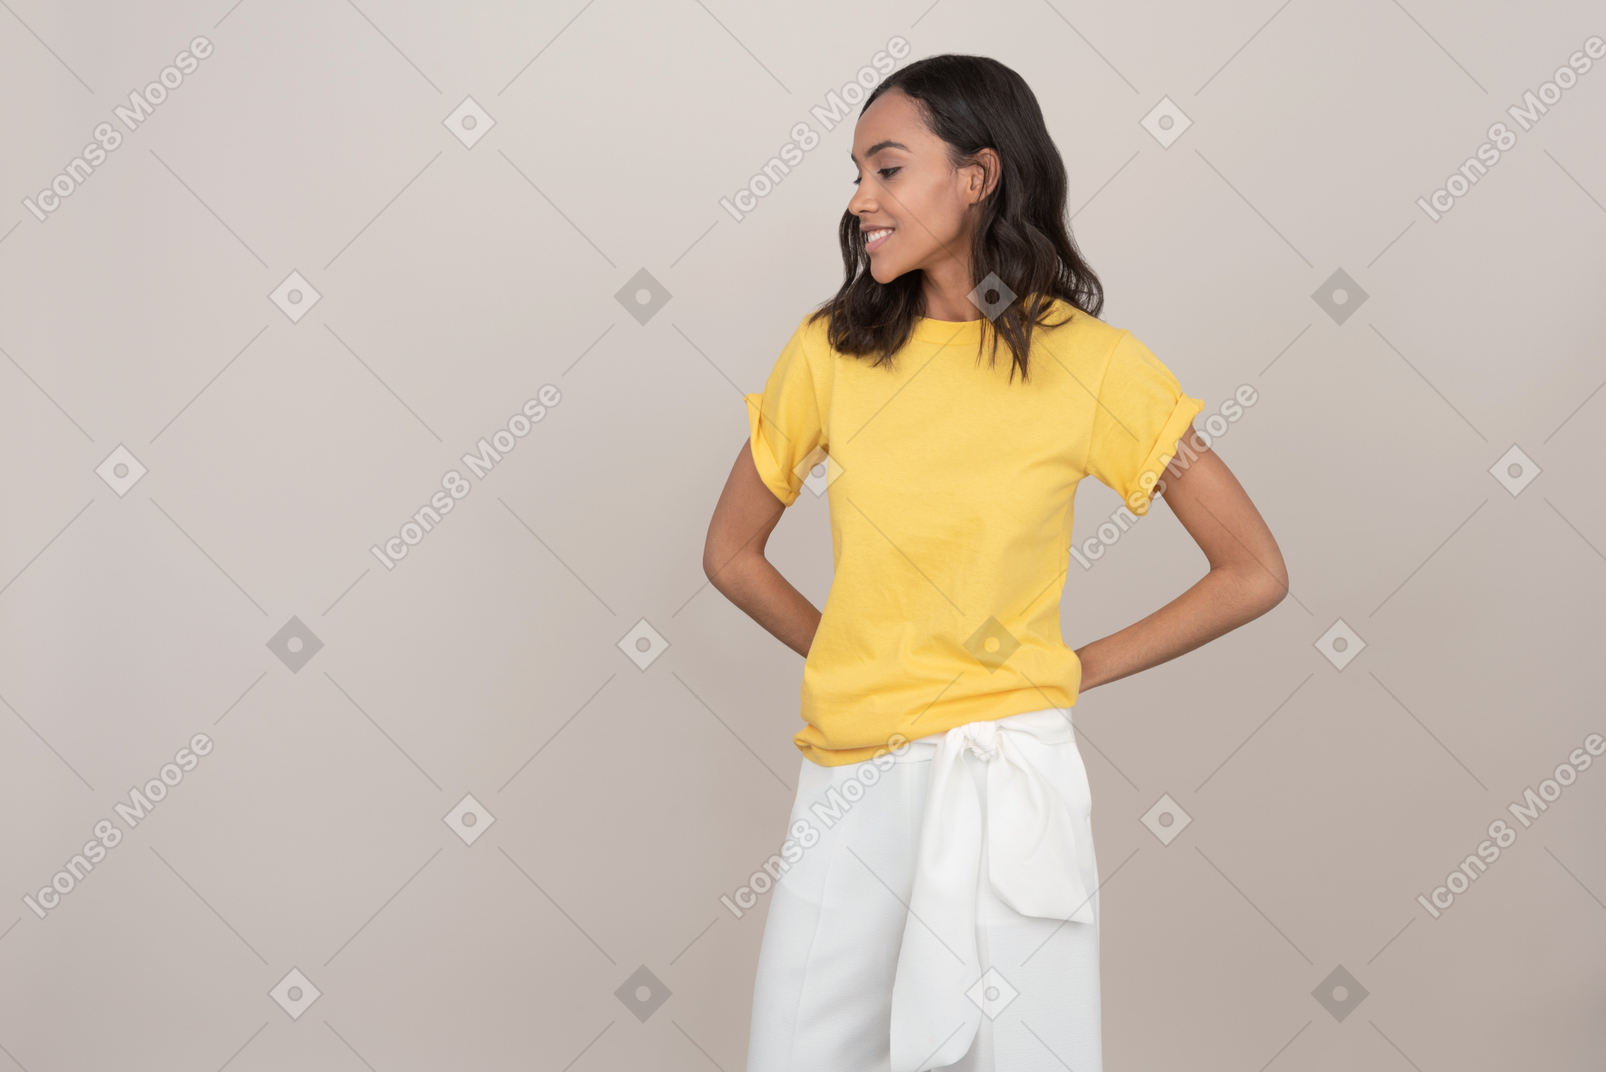 Young beautiful woman wearing a t-shirt